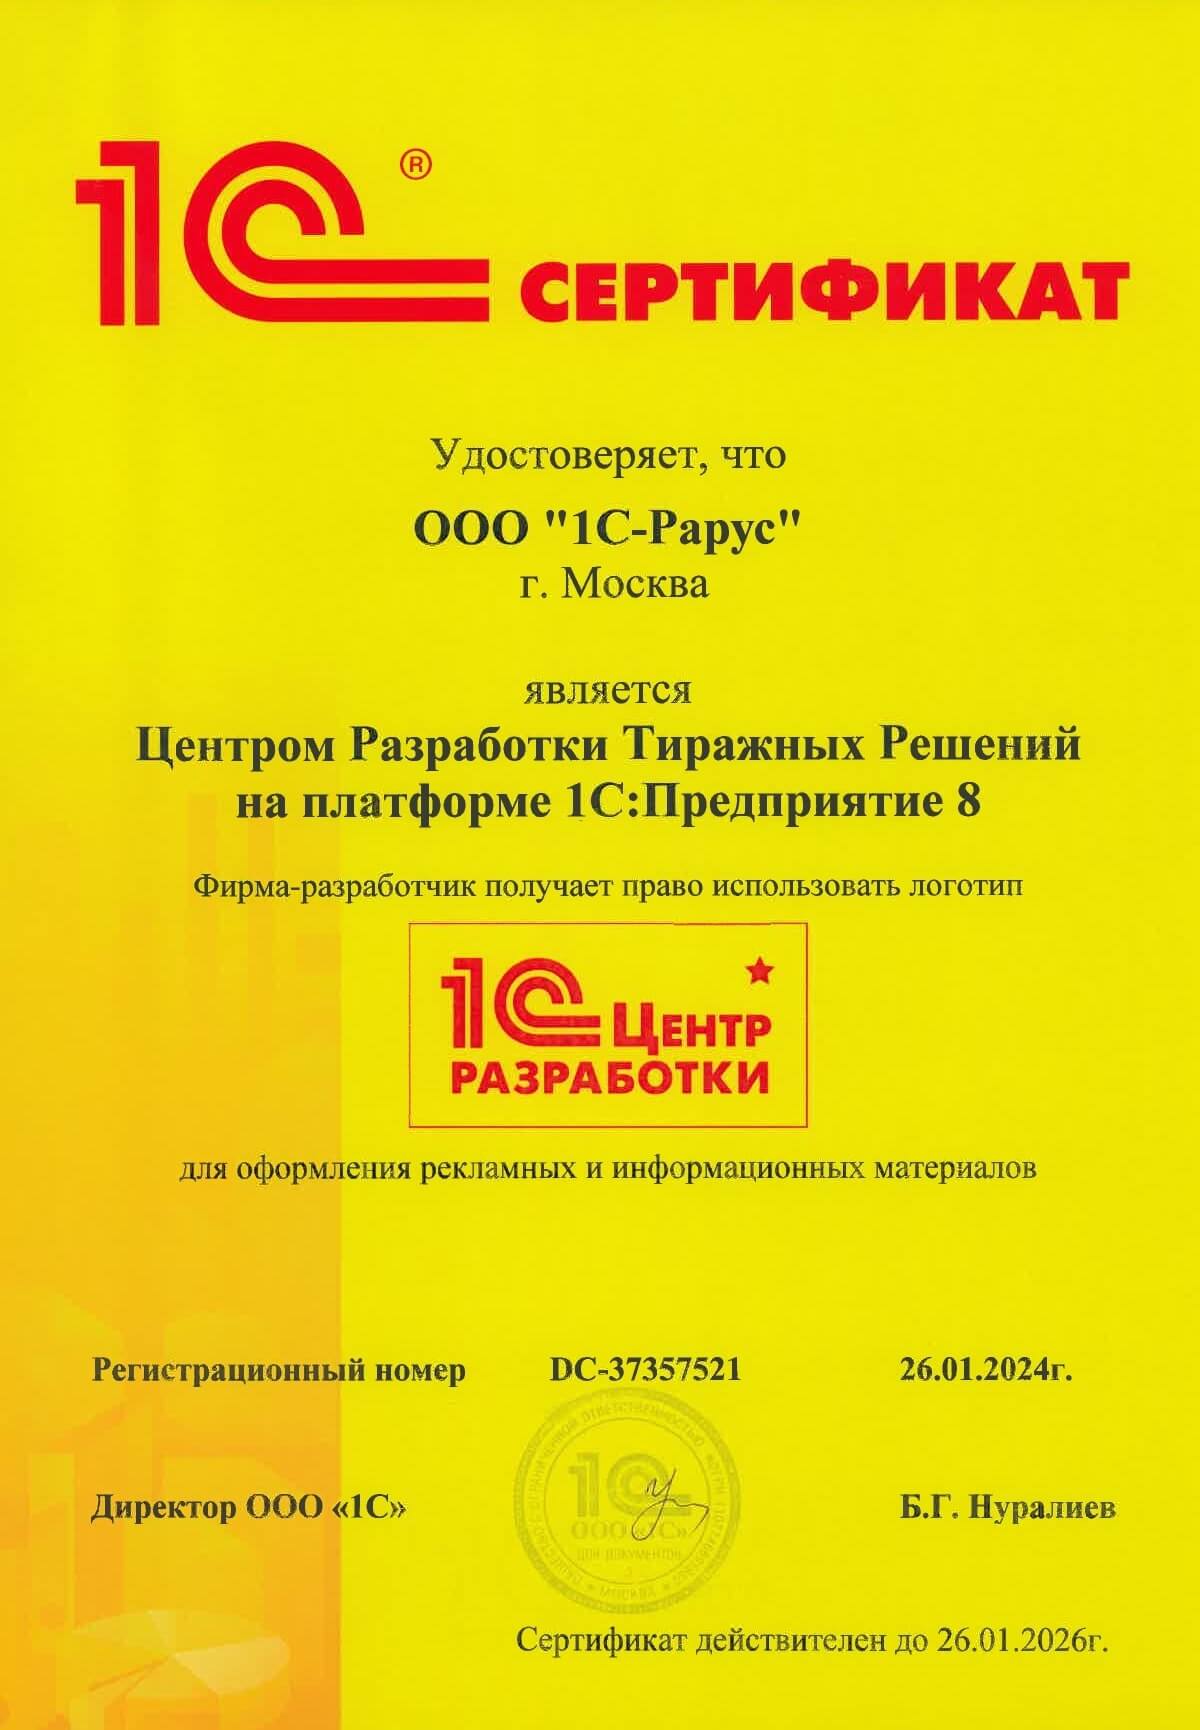 Сертификат Центра Разработки Тиражных Решений на платформе «1С:Предприятие 8». 2024 г.